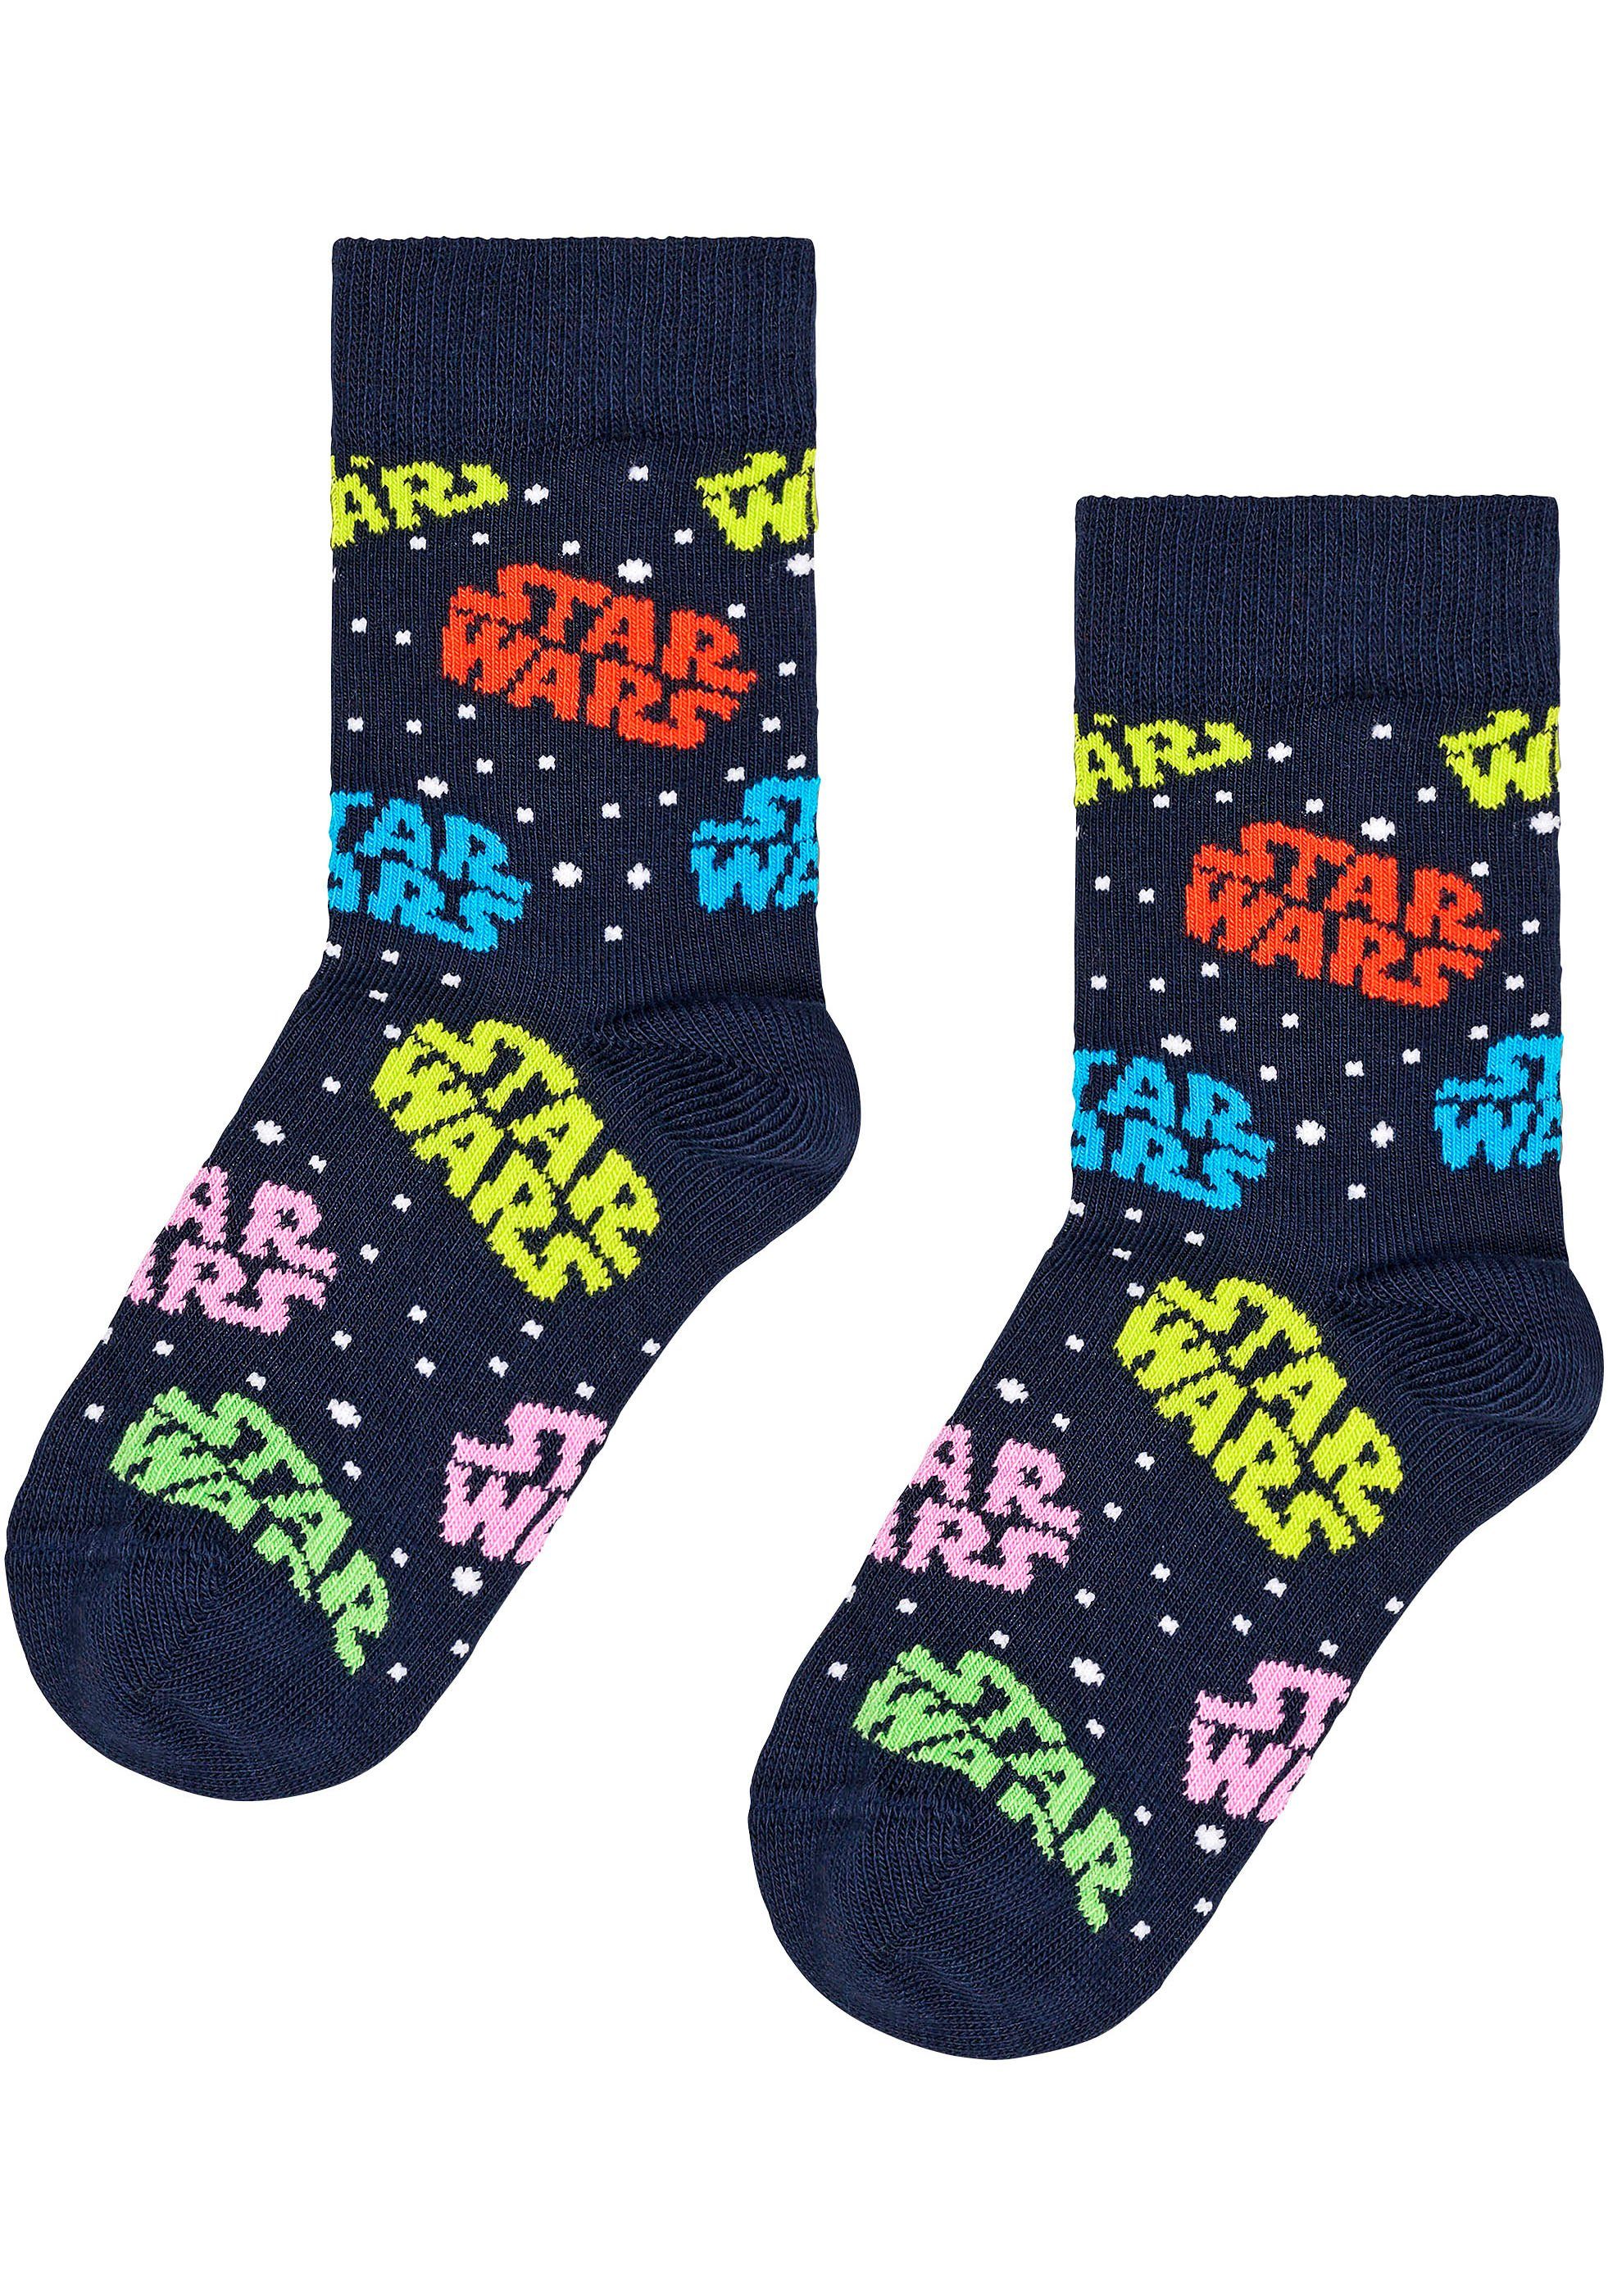 Happy Socks Socken Star Wars Set Millennium Wars Darth Vader Logo Falcon, & Star (3-Paar) Gift